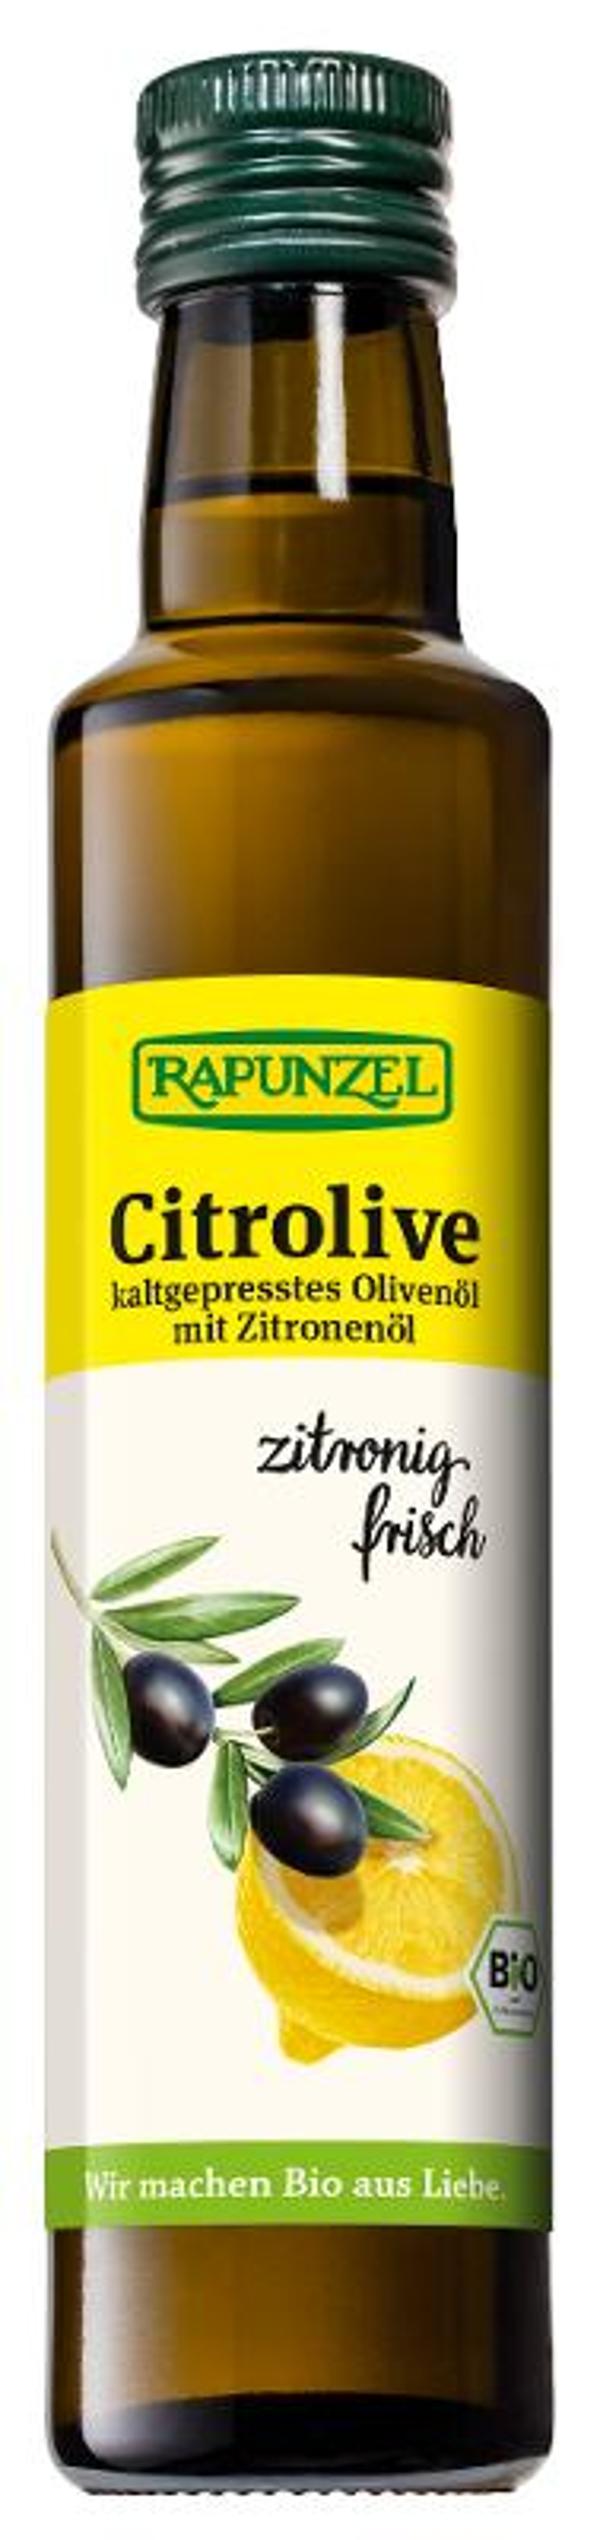 Produktfoto zu Citrolive von Rapunzel